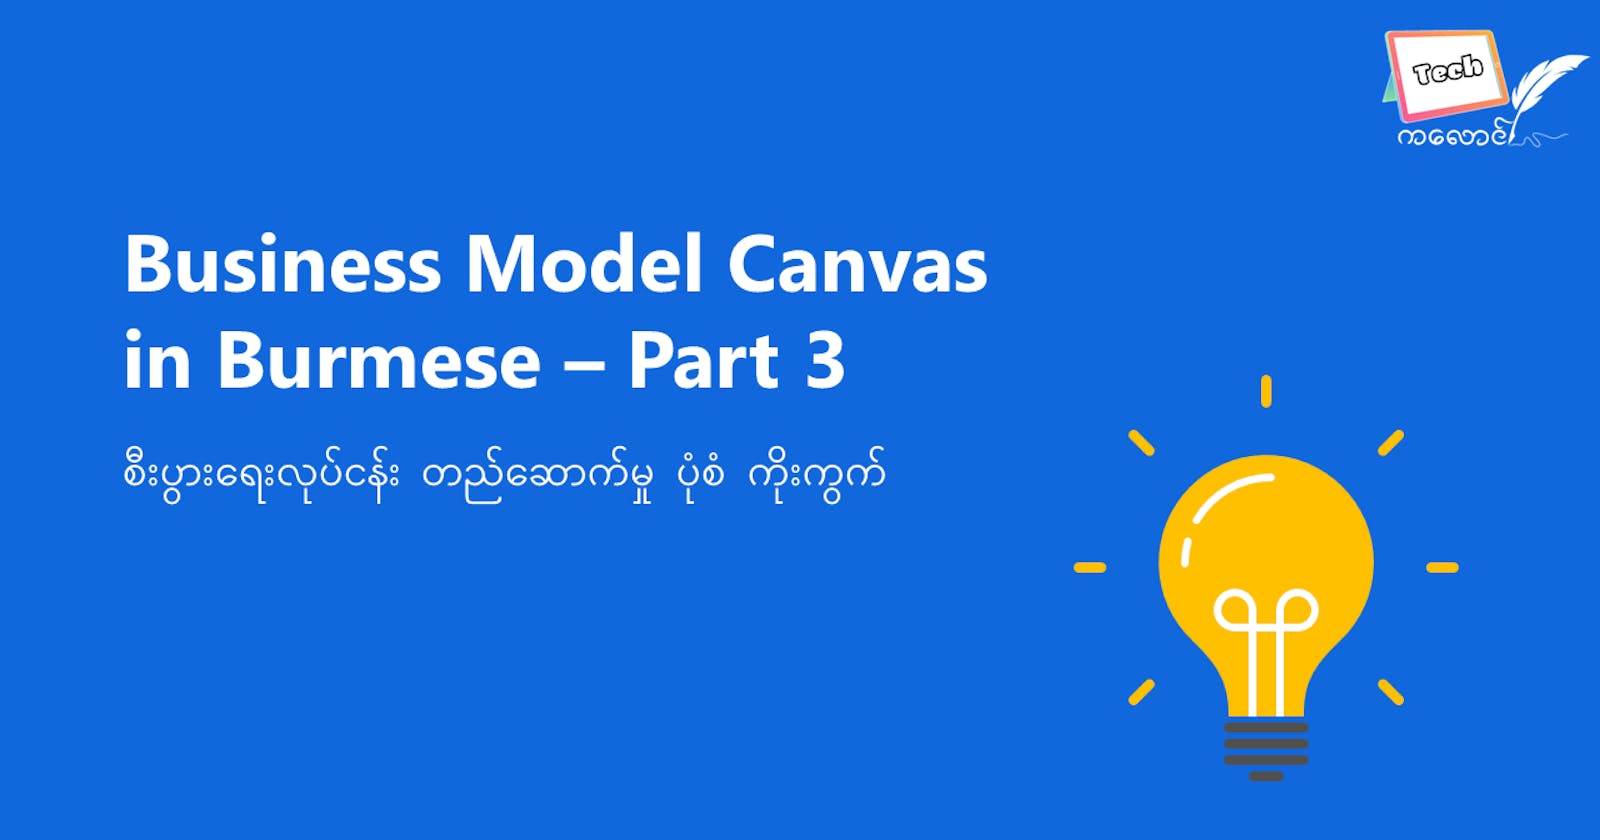 Business Model Canvas — Part 3